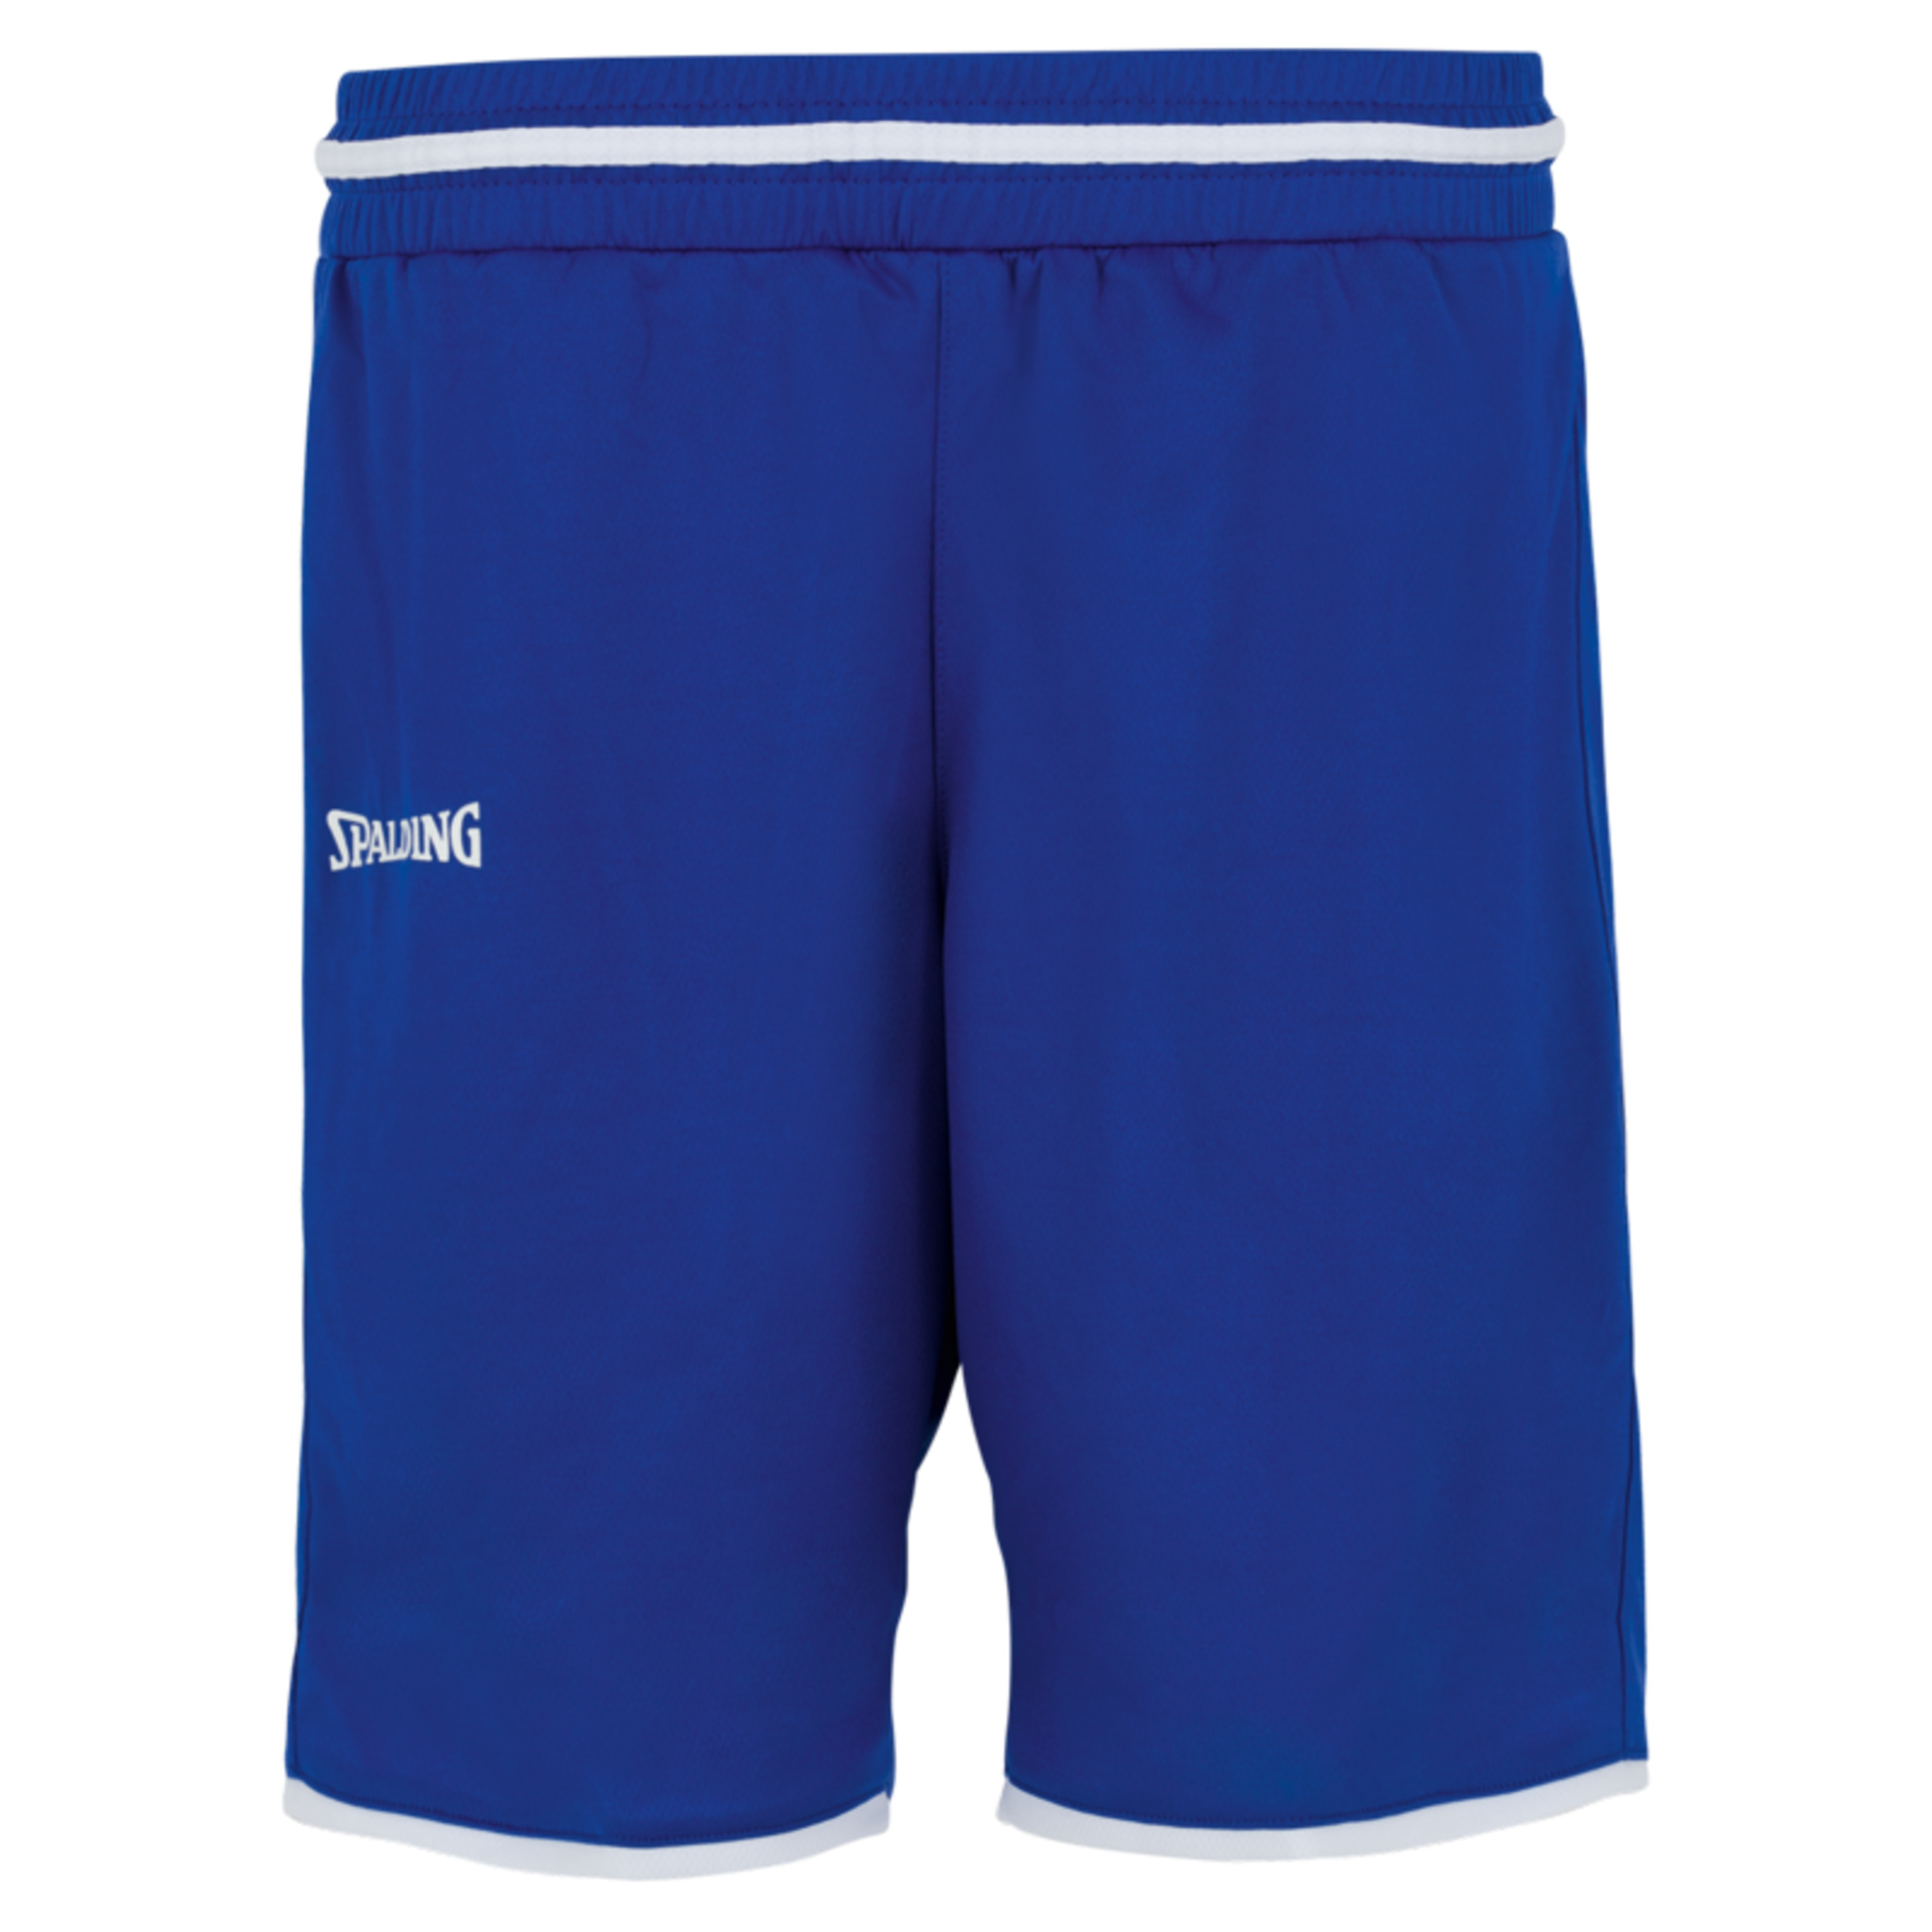 Move Shorts Women Azul Royal/blanco Spalding - azul - Pantalón Corto De Baloncesto Move Shorts Women  MKP